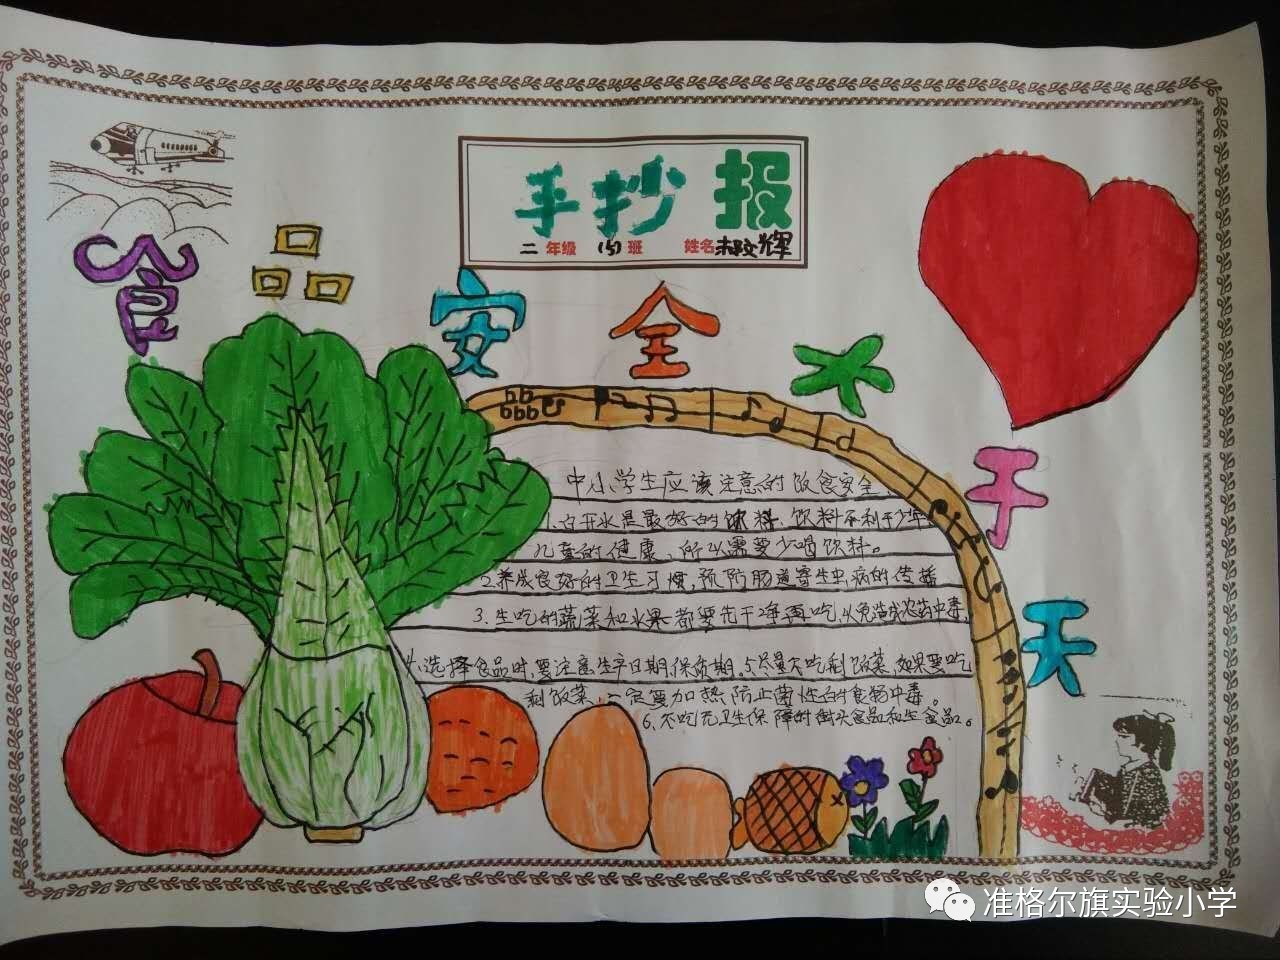 准格尔旗实验小学"健康中国行——合理膳食,健康相伴"